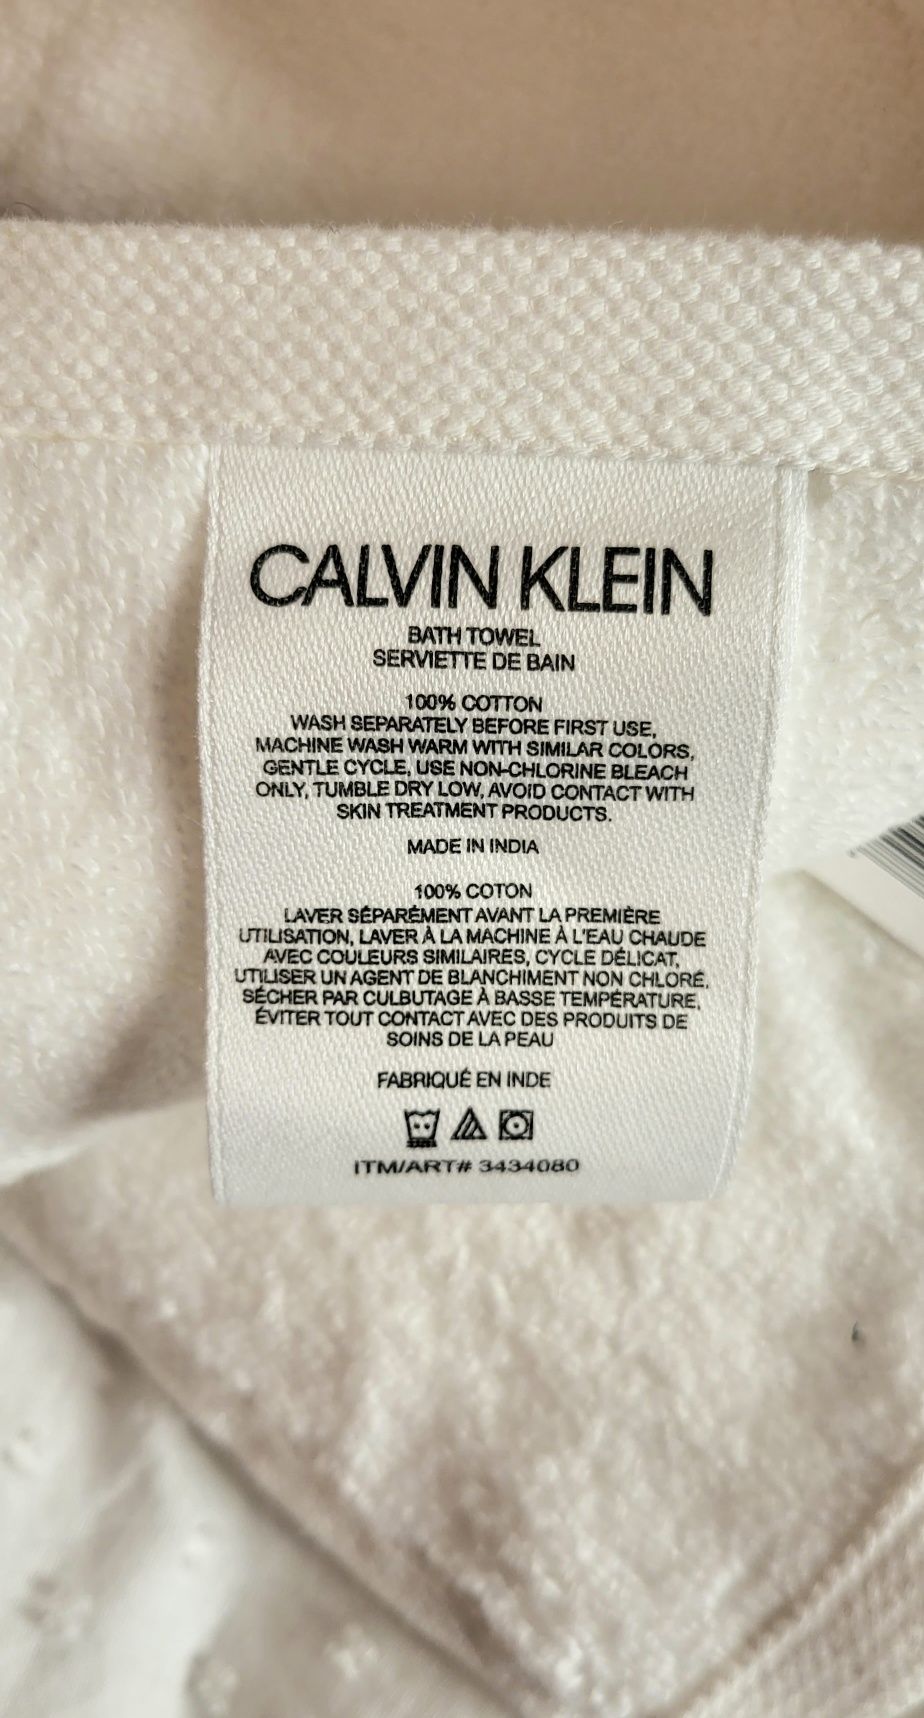 Банные полотенца Calvin Klein 100% cotton оригинал